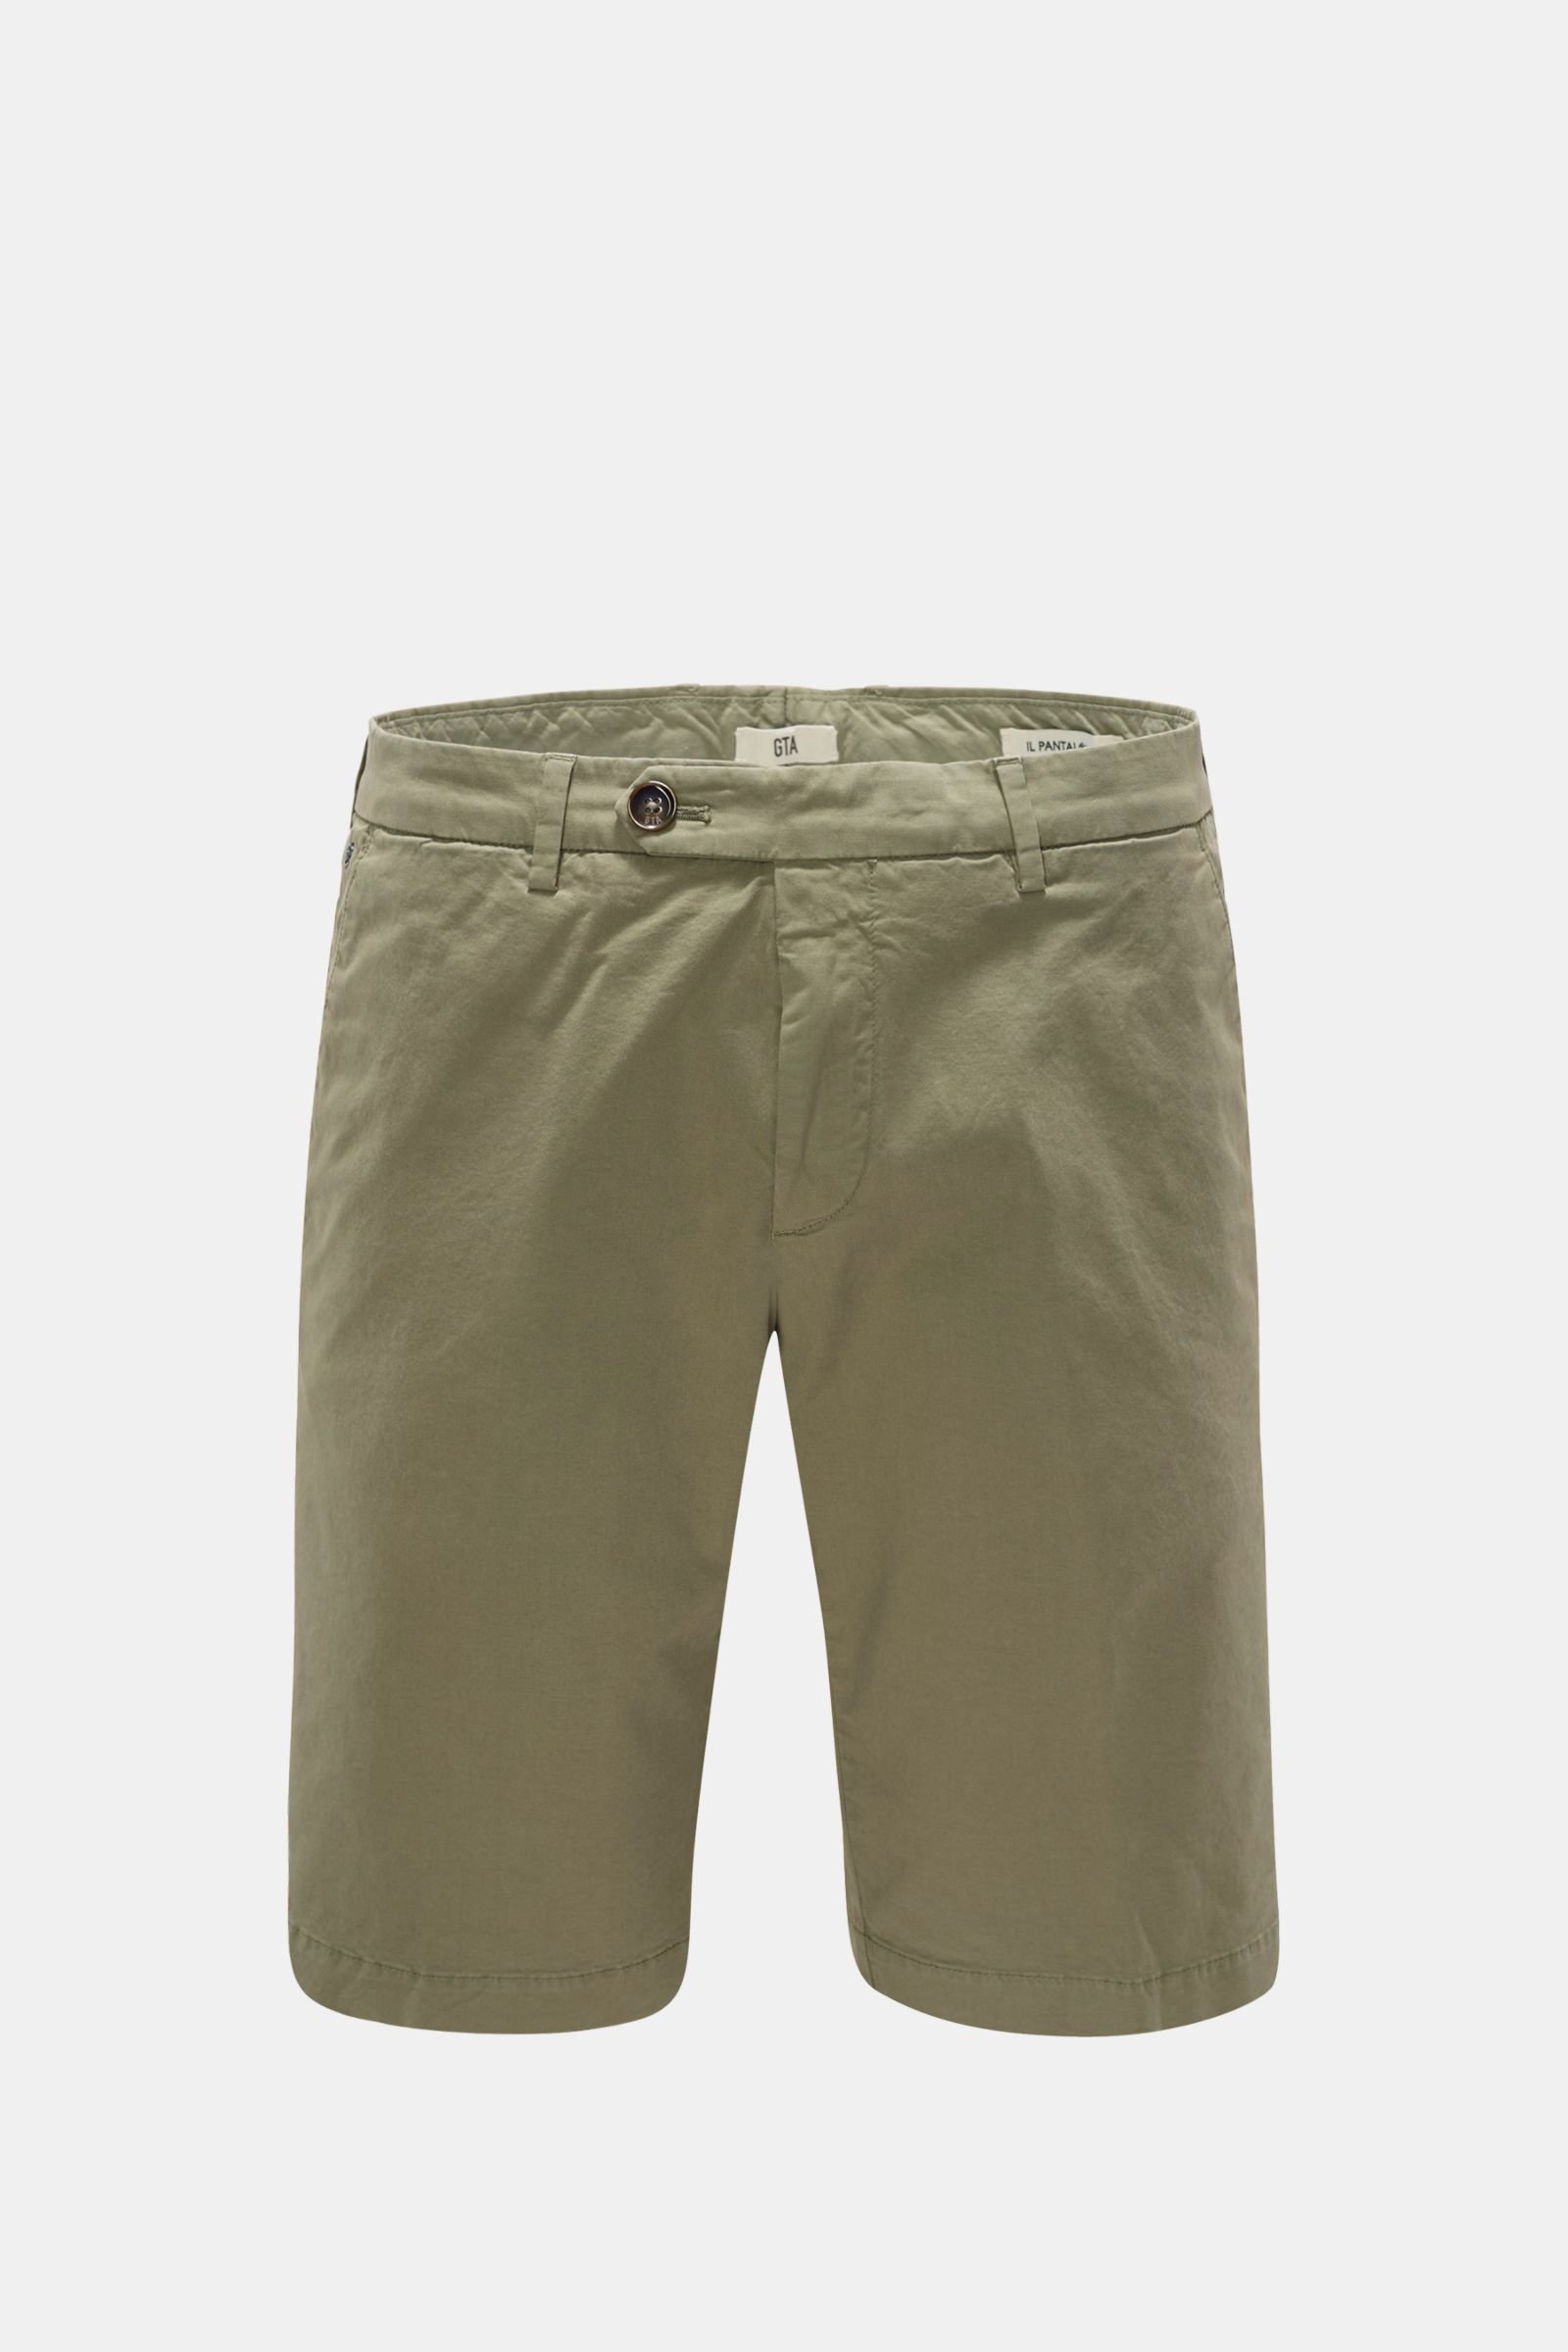 Bermuda shorts 'Nikko Short' grey green